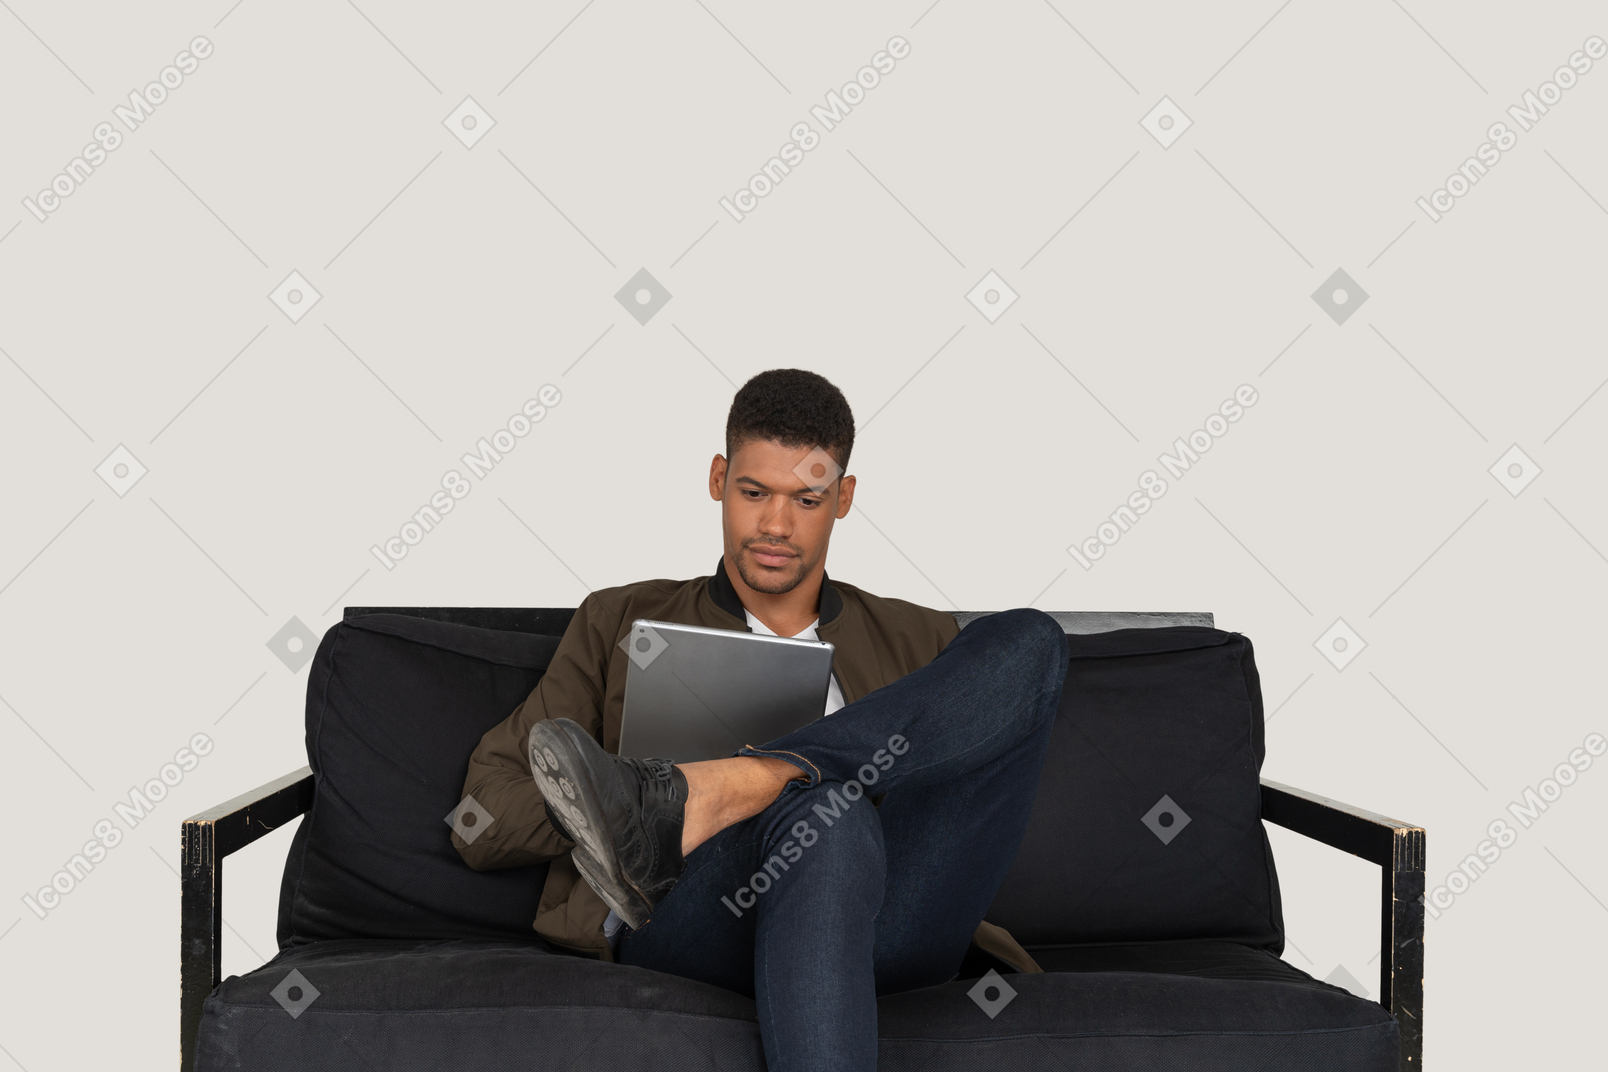 Vista frontal de un joven sentado en un sofá mientras sostiene la tableta